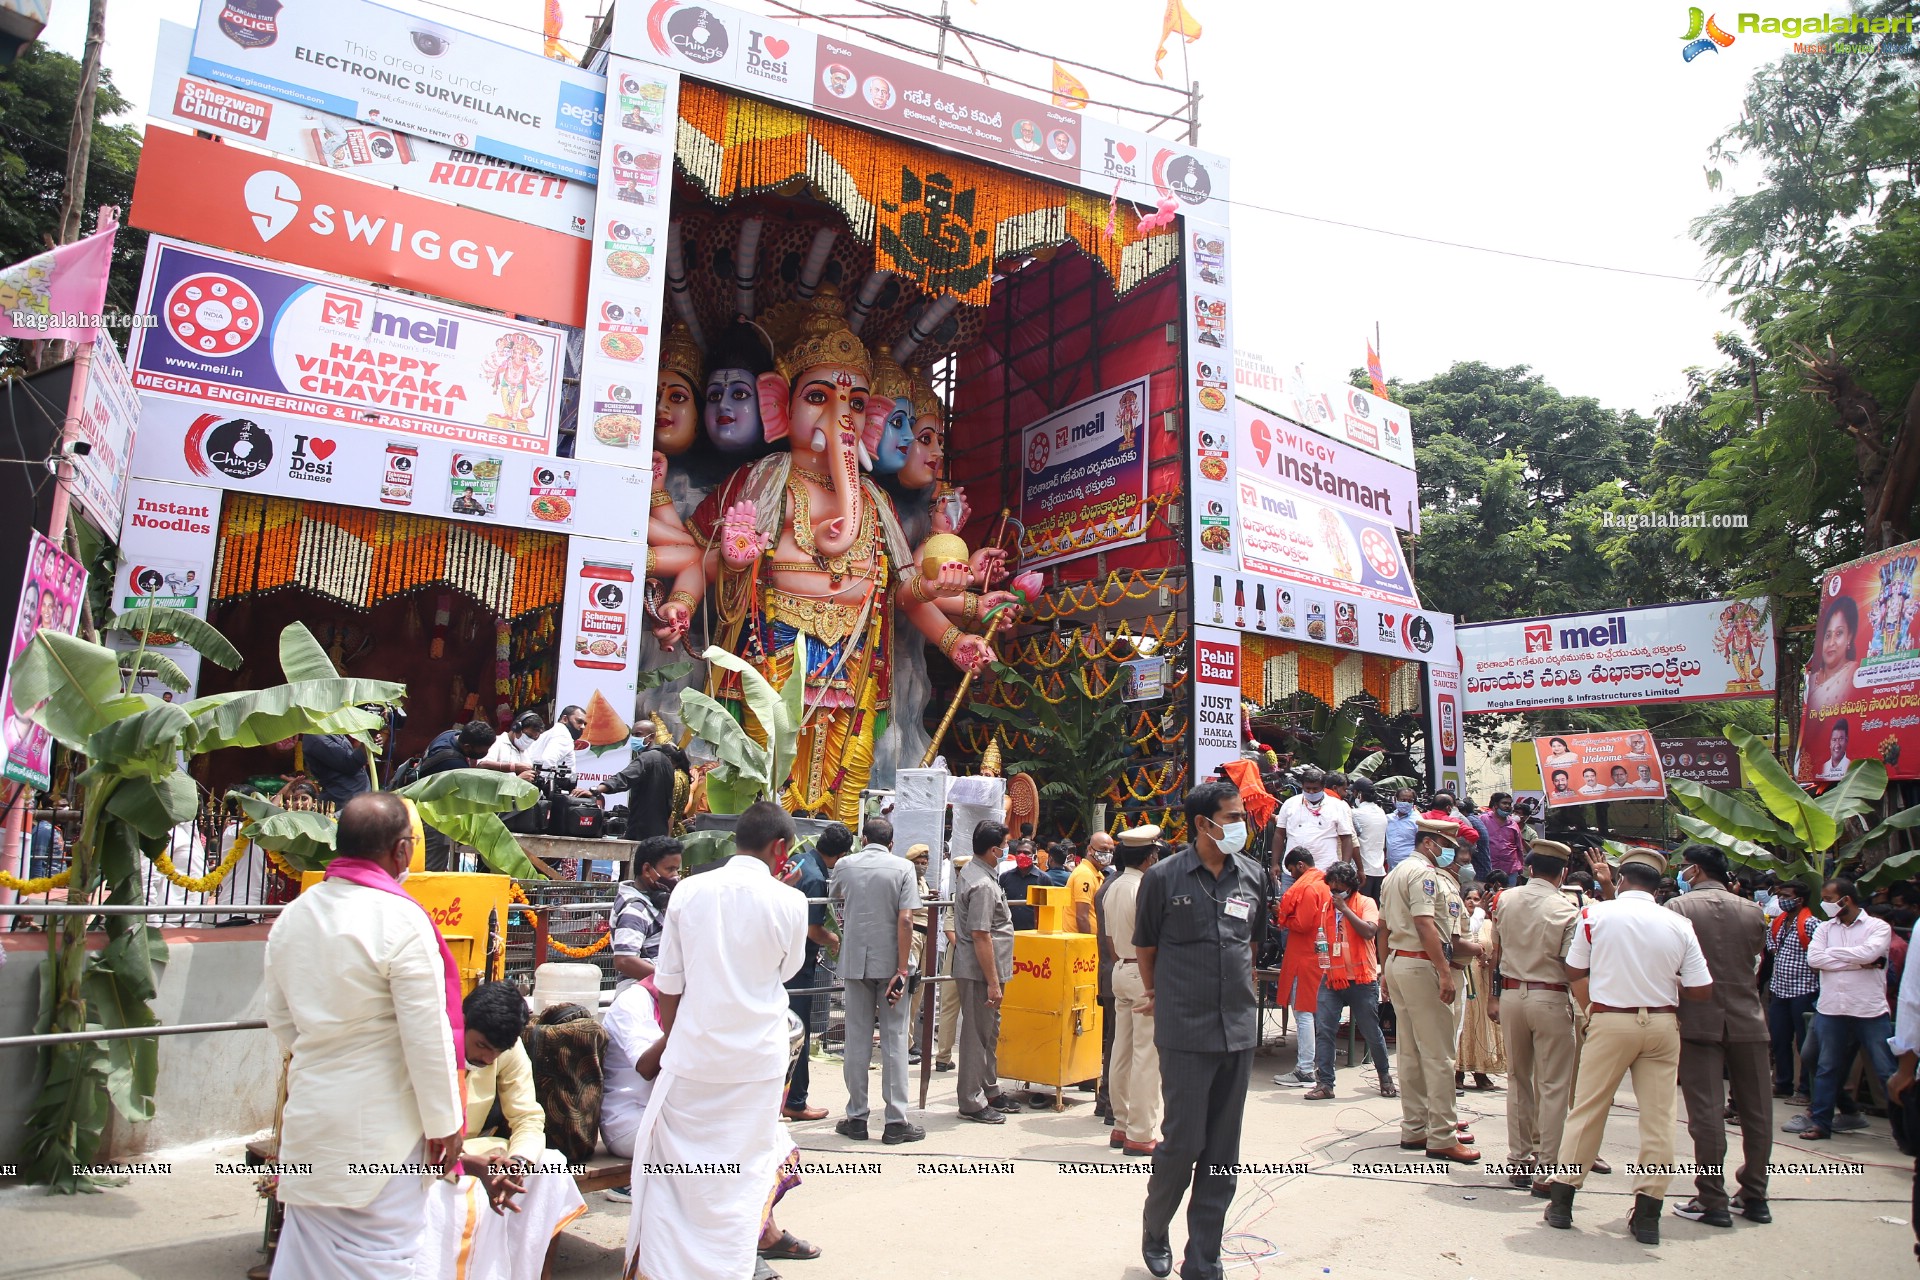 Khairatabad Ganesh 2021 as Shri Panchamuha Rudra Maha Ganapati with the idols Krishna Kali and Kala Nageshwari on Either Side